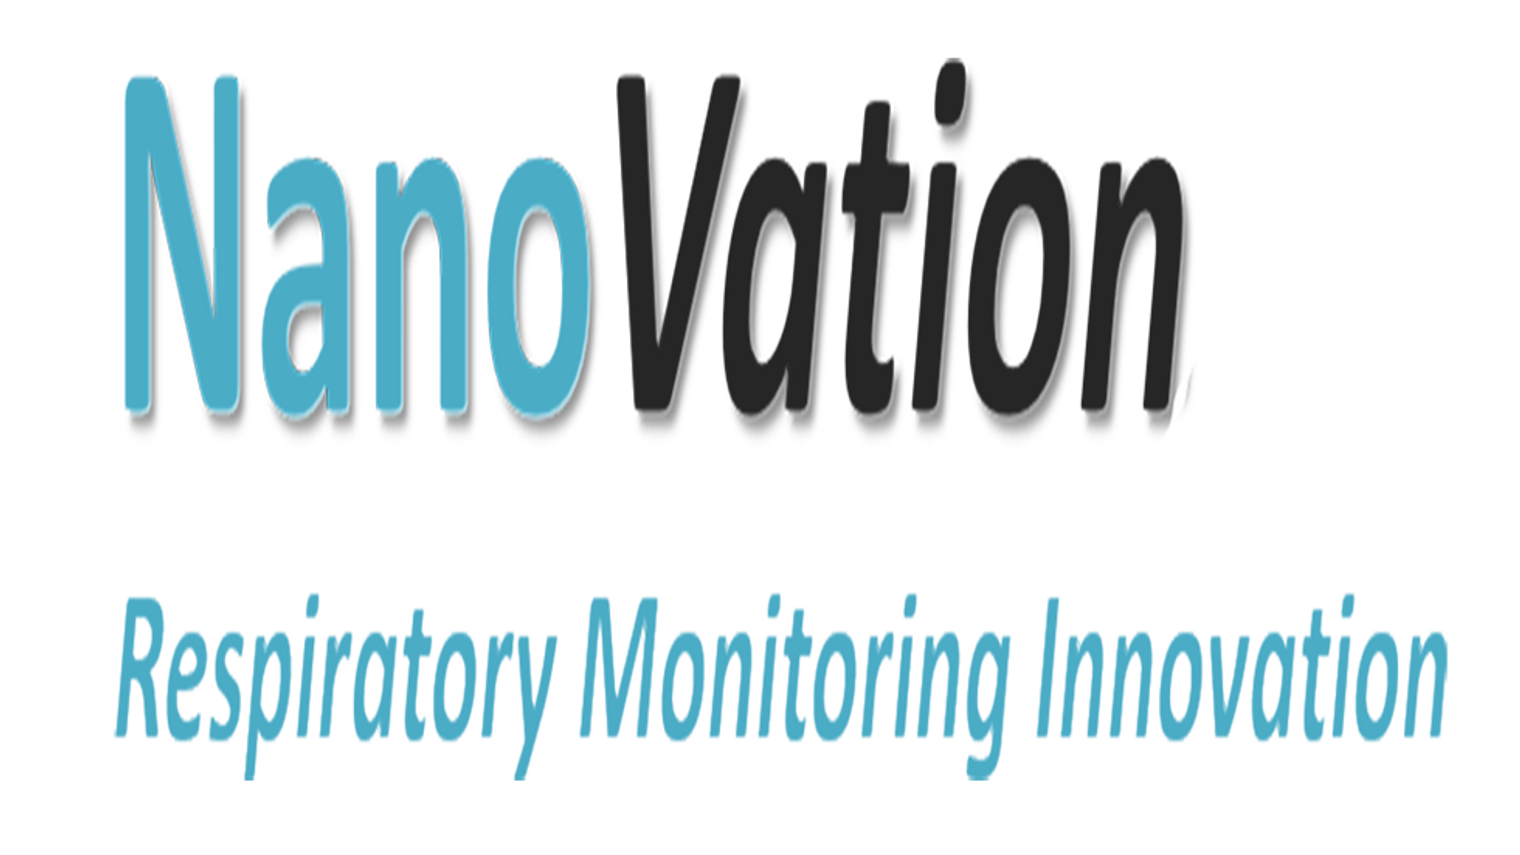 NanoVation's Channel